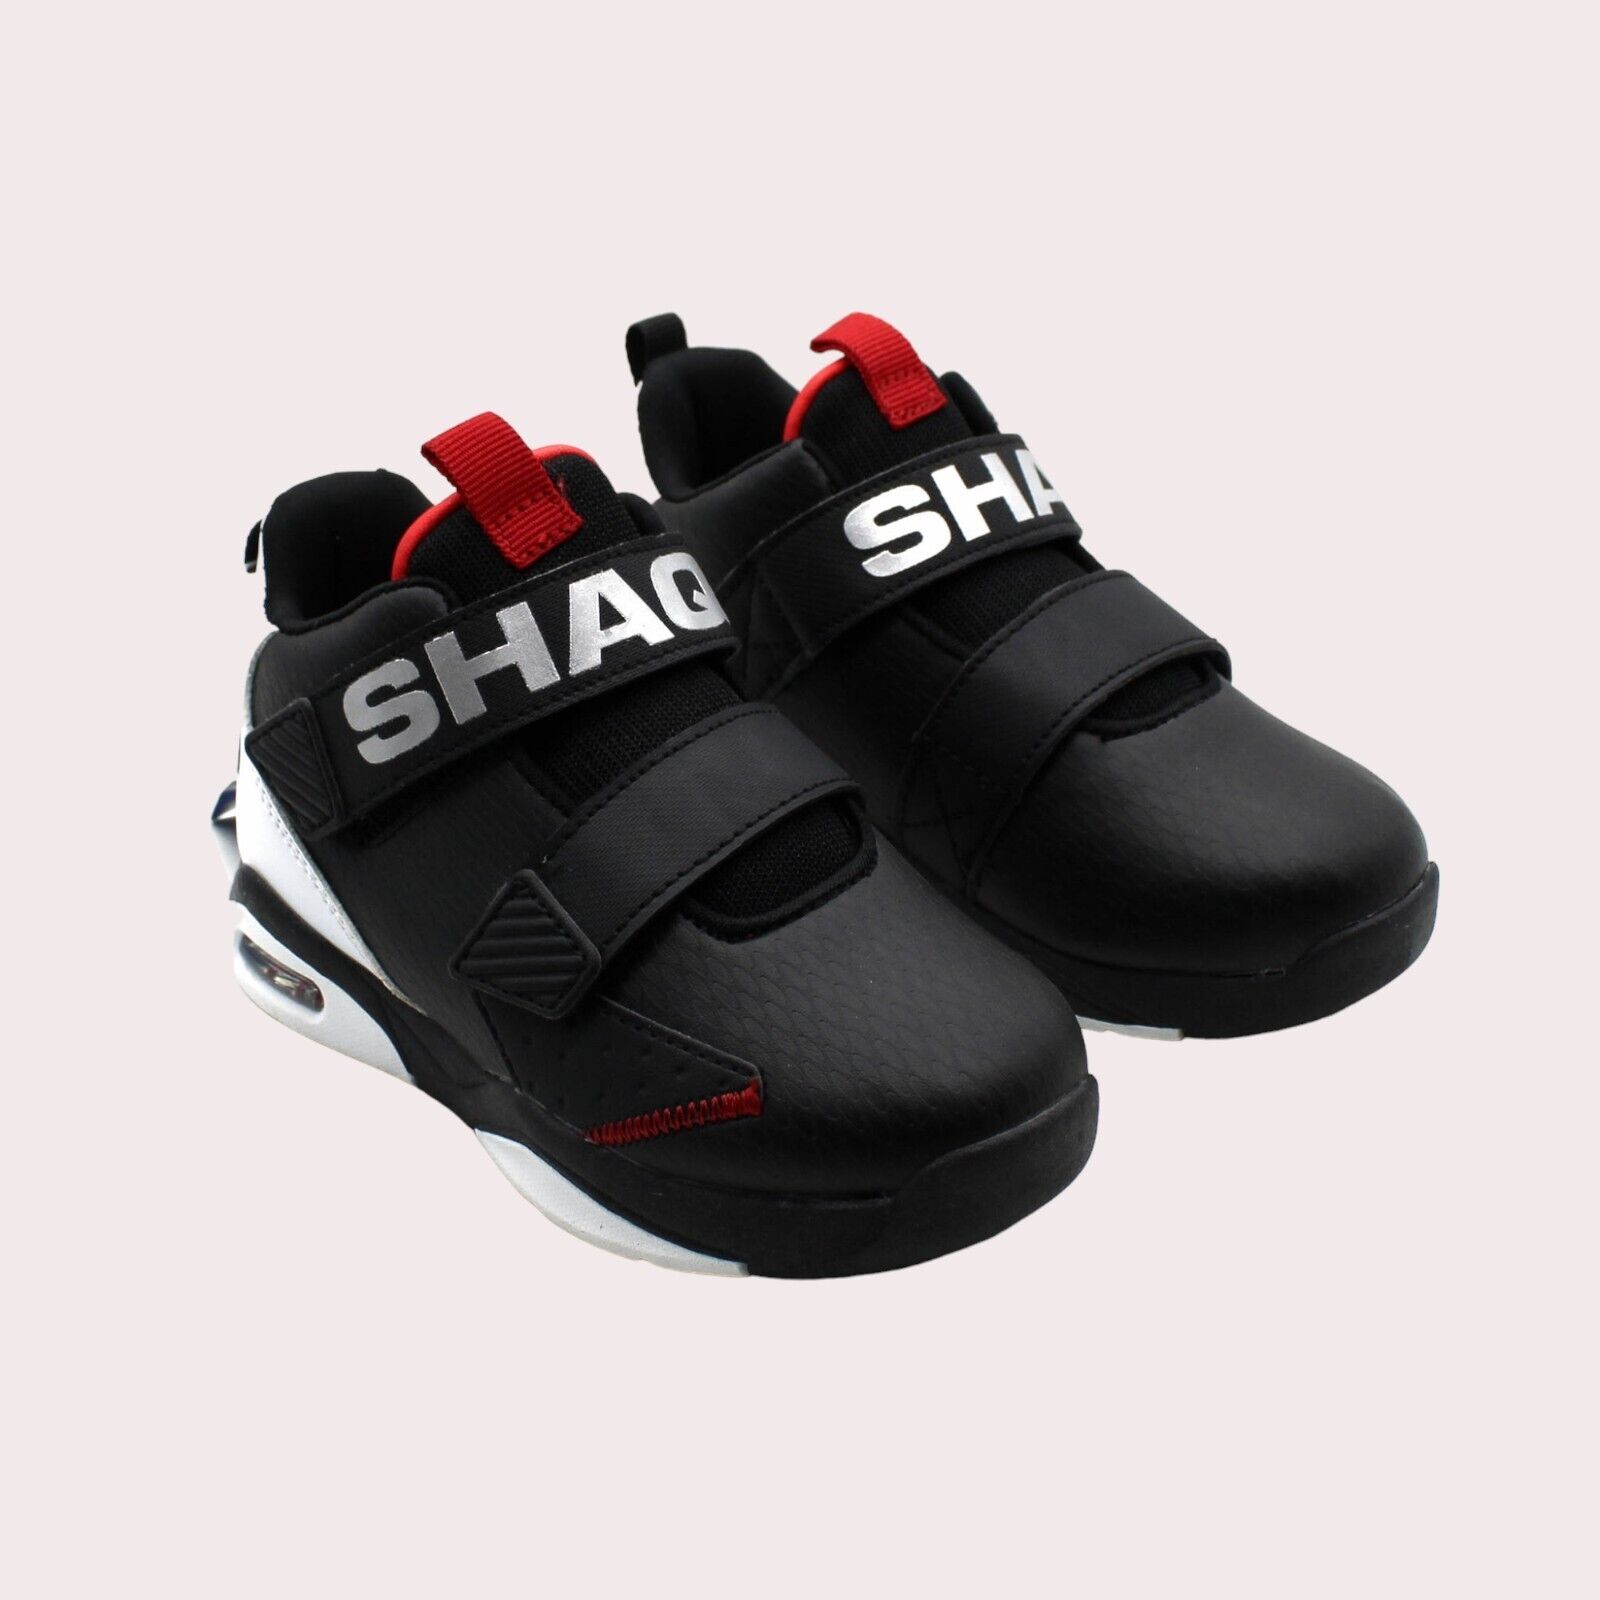 Huge Boys’ Shaq Infant & Toddler Composite Basketball Shoes in Black on eBay